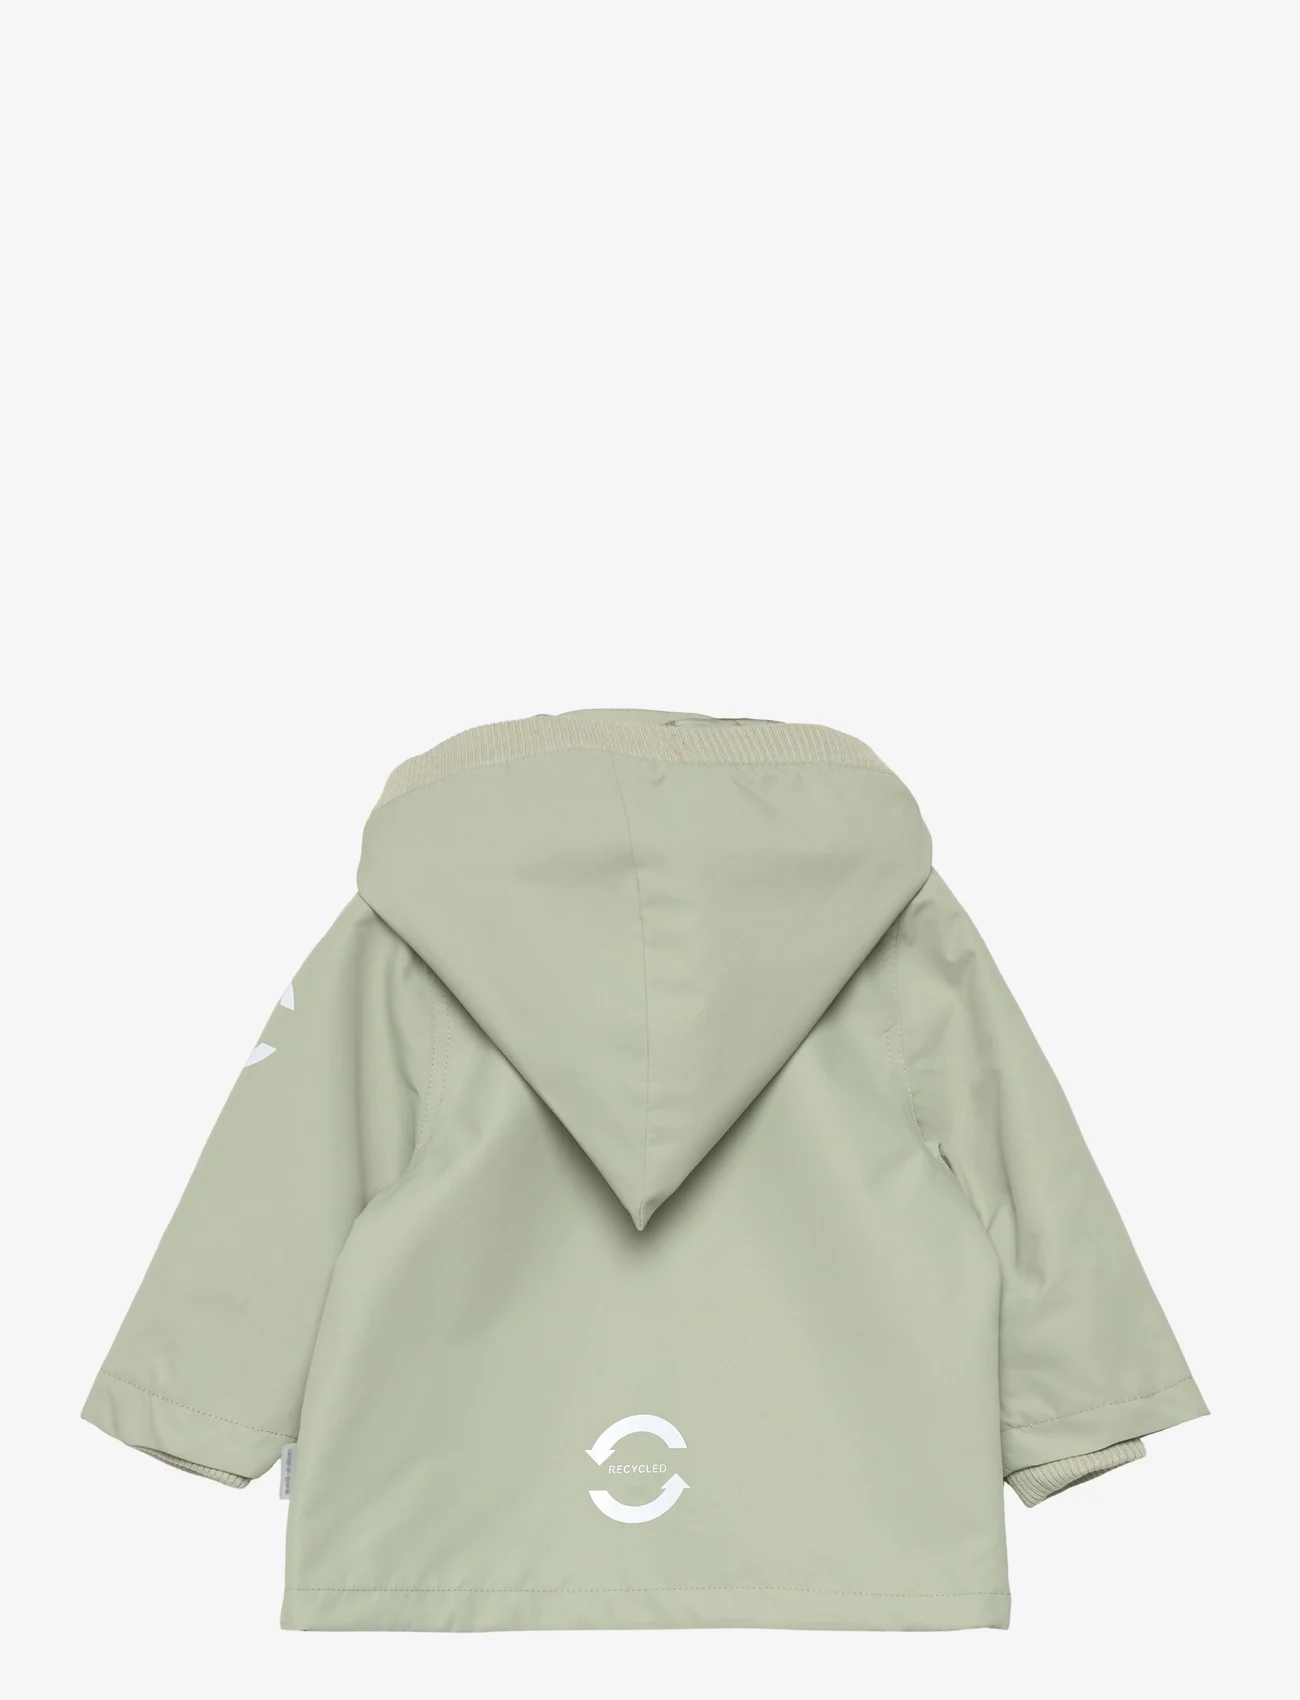 mikk-line - Polyester Baby Jacket - anorakker - desert sage - 1